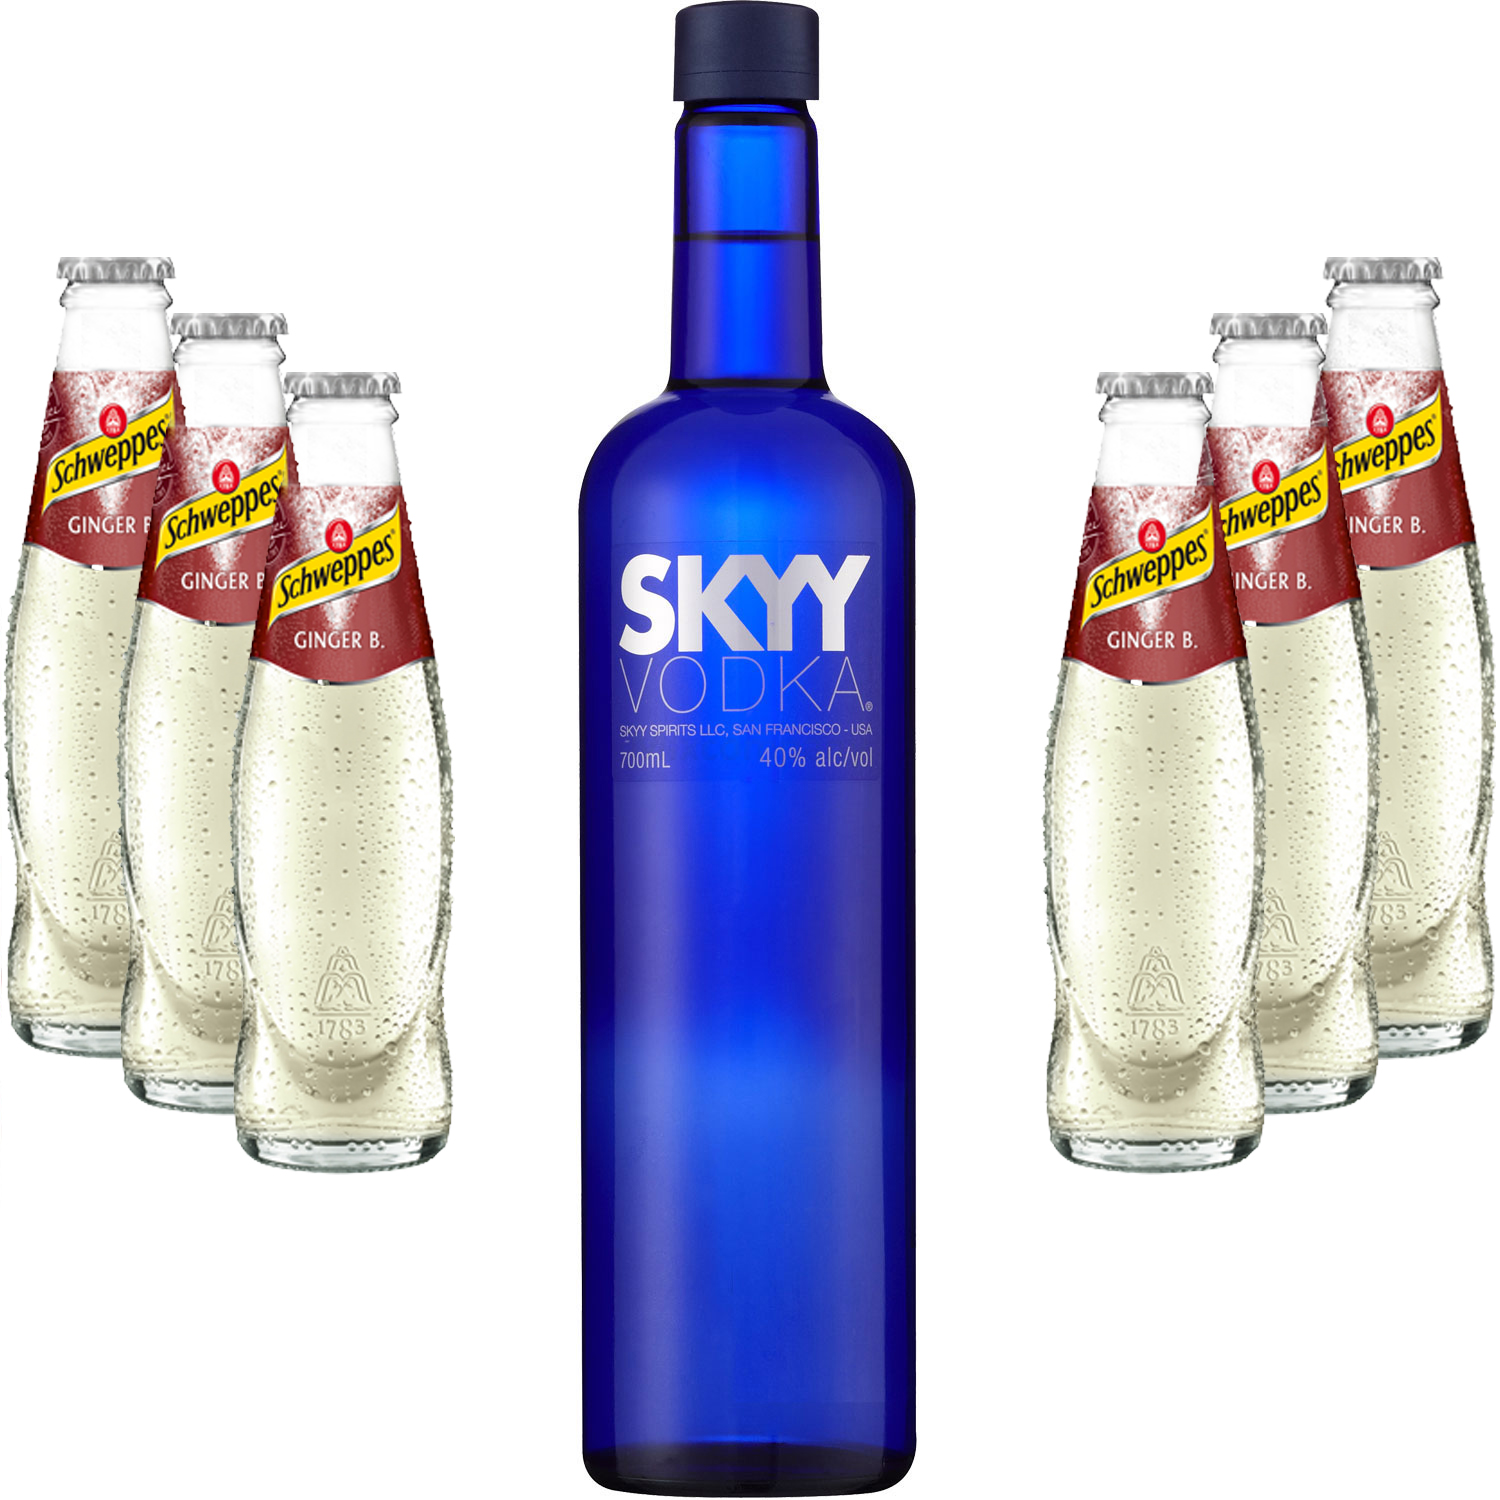 Moscow Mule Set - Skyy Vodka 0,7l 700ml (40% Vol) + 6x Schweppes Ginger Beer 200ml - Inkl. Pfand MEHRWEG